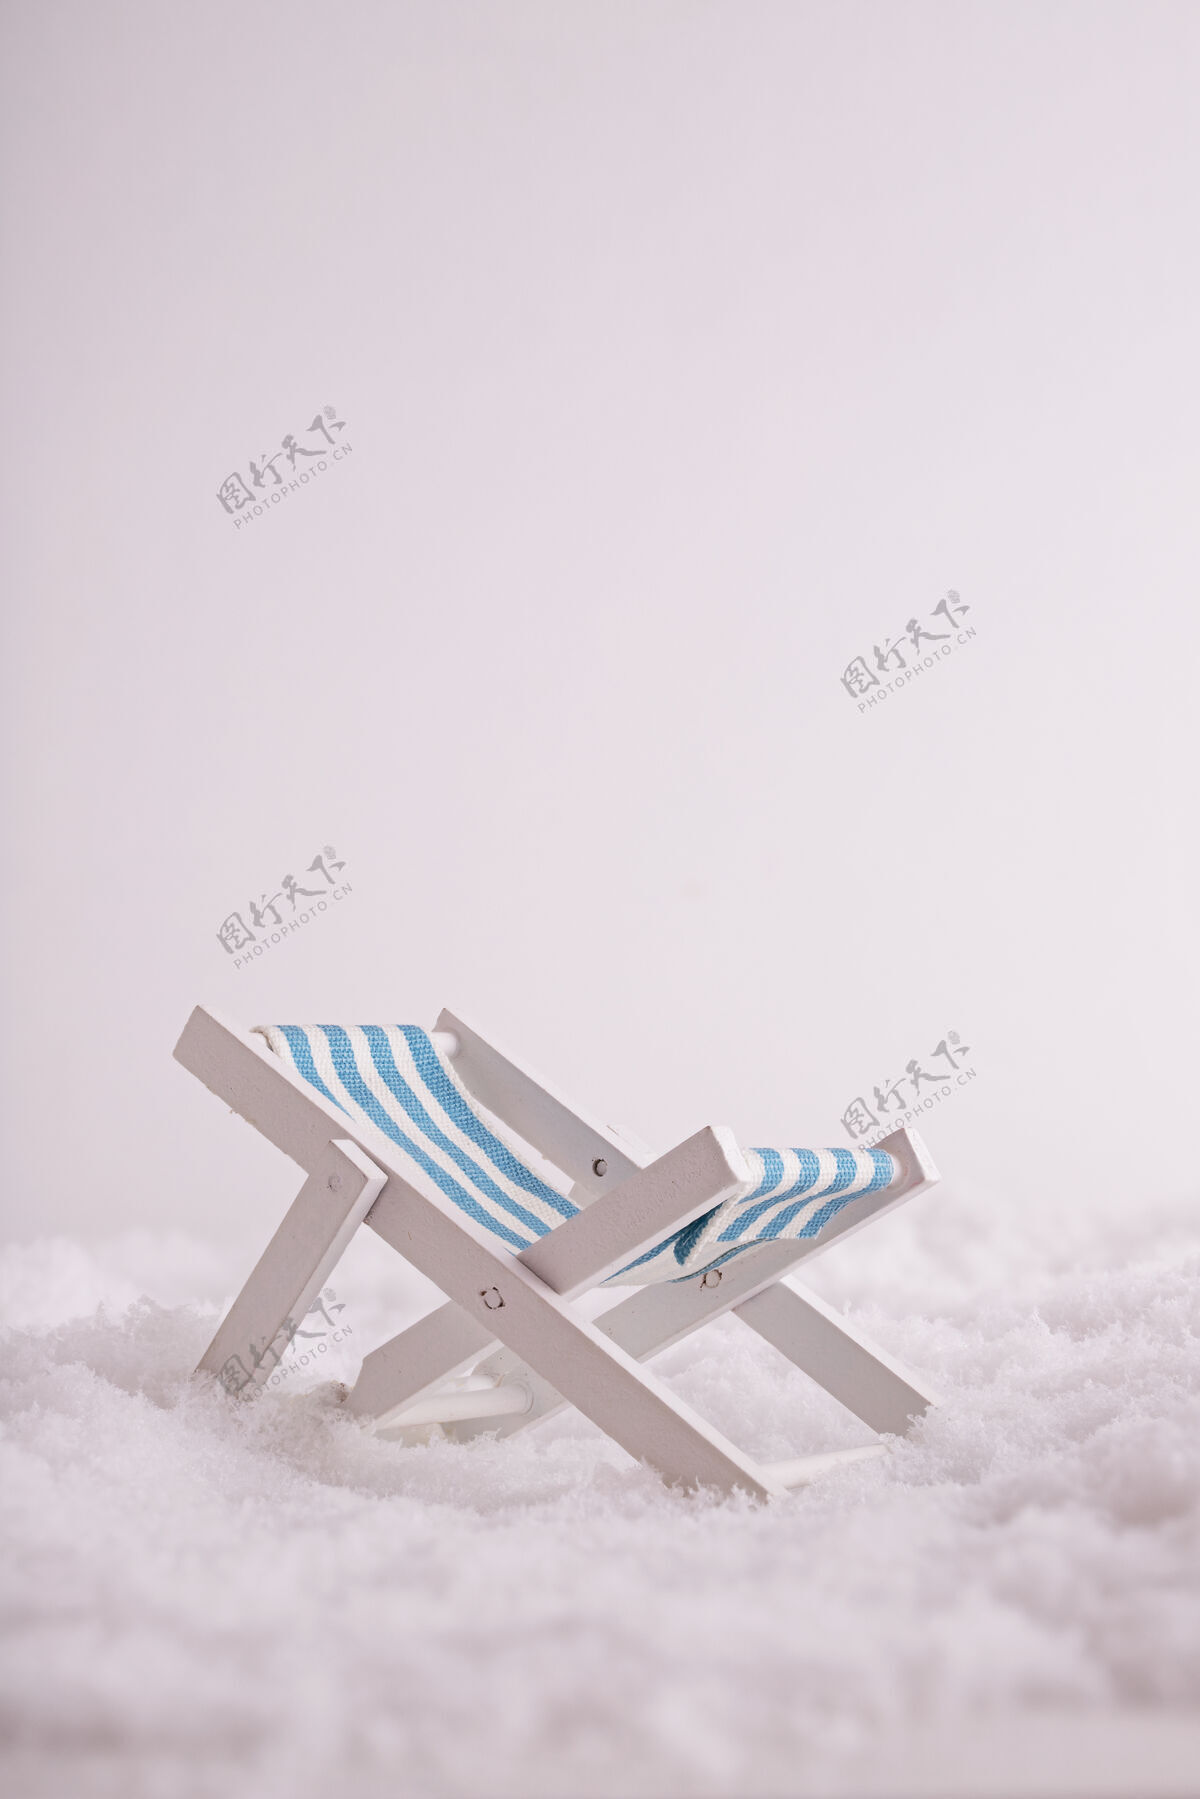 日光浴床一个小玩具在雪地里晒太阳的特写镜头冰海小